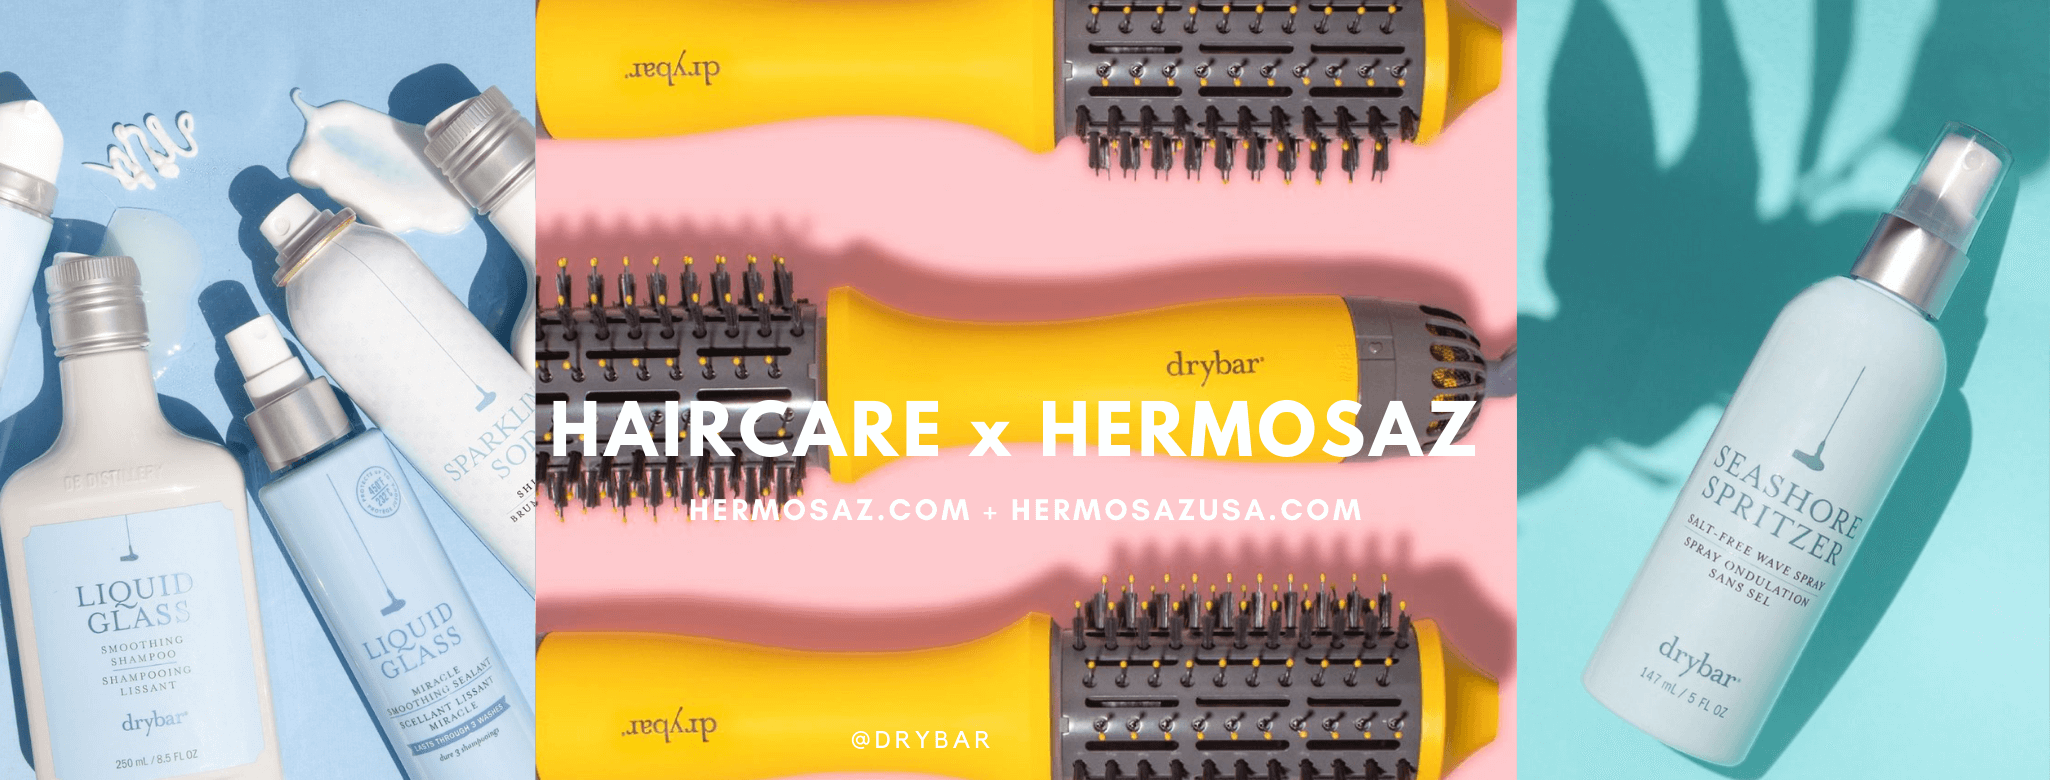 Haircare x Hermosaz